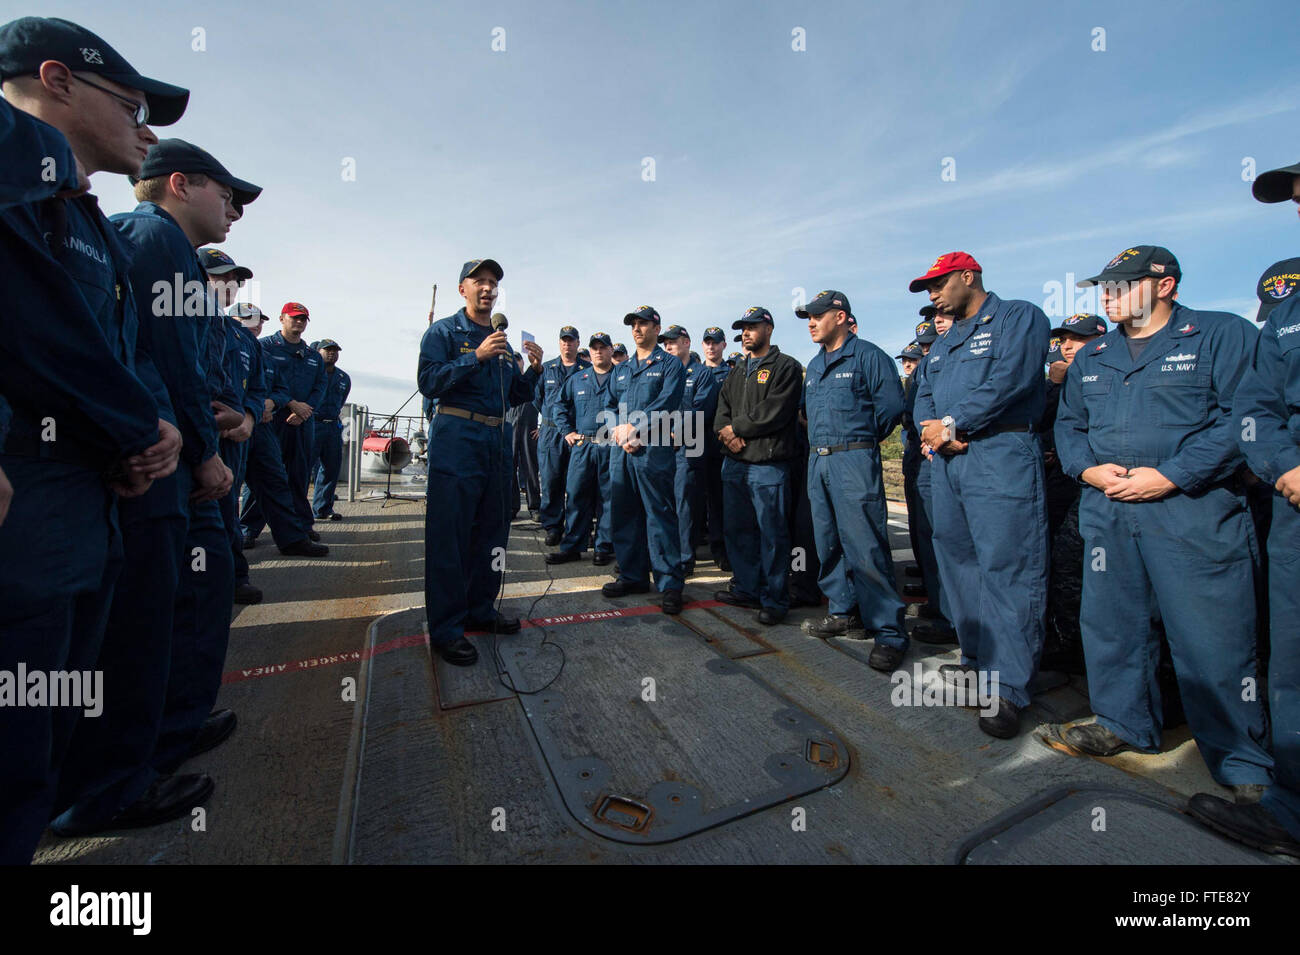 131123-N-VC236-100: SOUDA BAY, Griechenland (23. November 2013) - CMdR Dave Stoner, Kommandierender Offizier der der Arleigh-Burke-Klasse geführte Flugkörper Zerstörer USS Ramage (DDG-61), center, spricht zu den Seeleuten während eines alle Hände Anrufs gehalten auf dem Vorschiff. Ramage ist auf eine geplante Bereitstellung unterstützen maritimer Sicherheitsoperationen und Sicherheitsbemühungen Zusammenarbeit Theater in den USA 6. Flotte Einsatzgebiet. (U.S. Navy Photo by Massenkommunikation Spezialist 3. Klasse Jackie Hart/freigegeben) Stockfoto